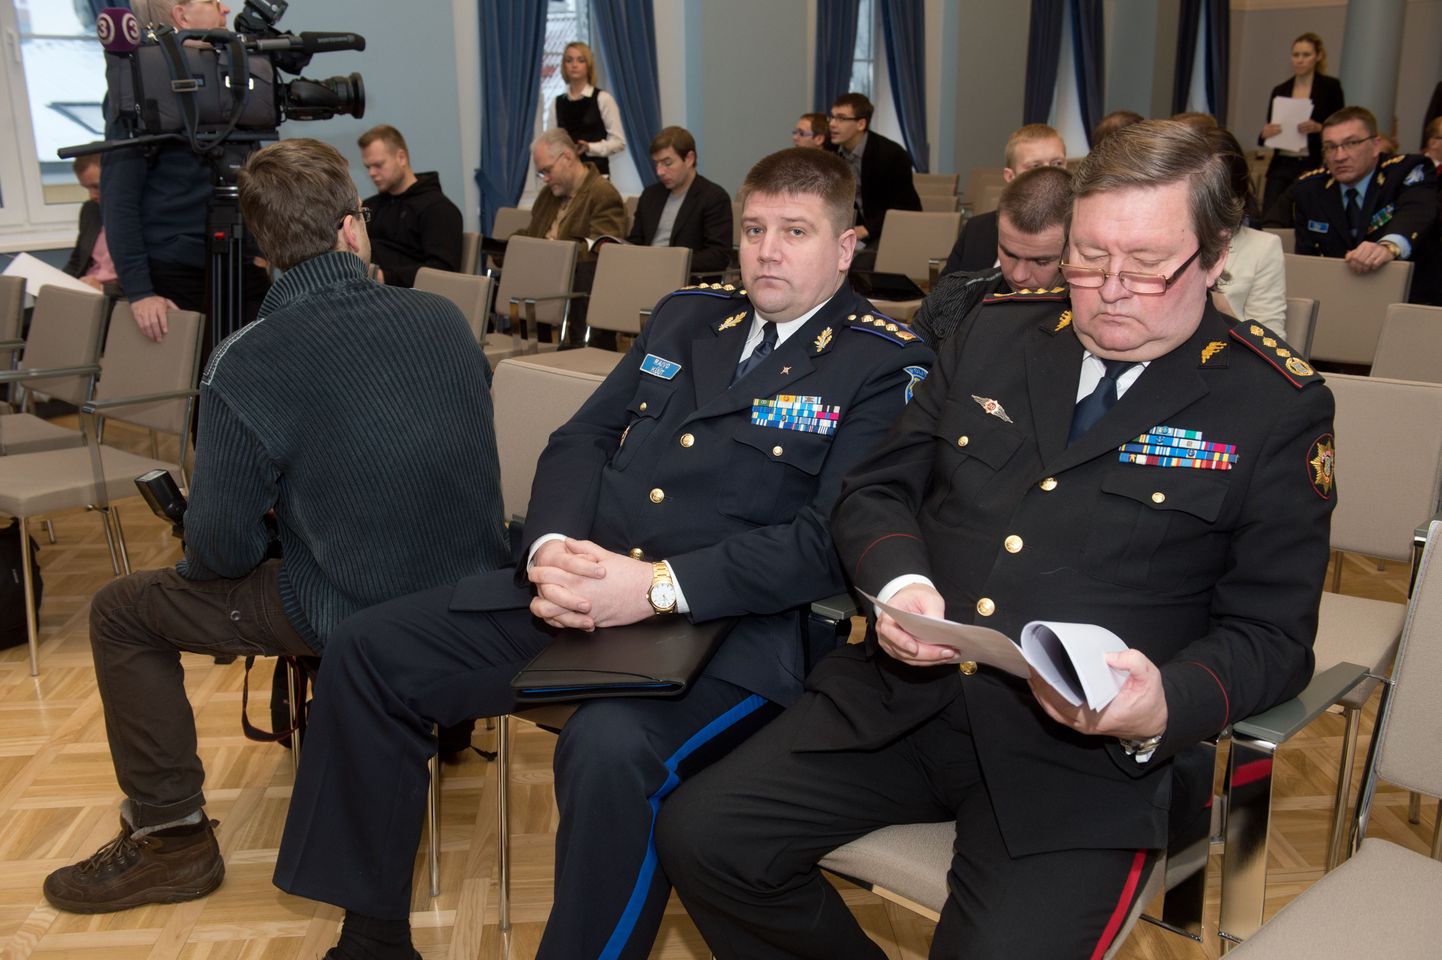 Politsei- ja piirivalveameti peadirektor Raivo Küüt ning päästeameti peadirektor Kalev Timberg pressikonverentsil.